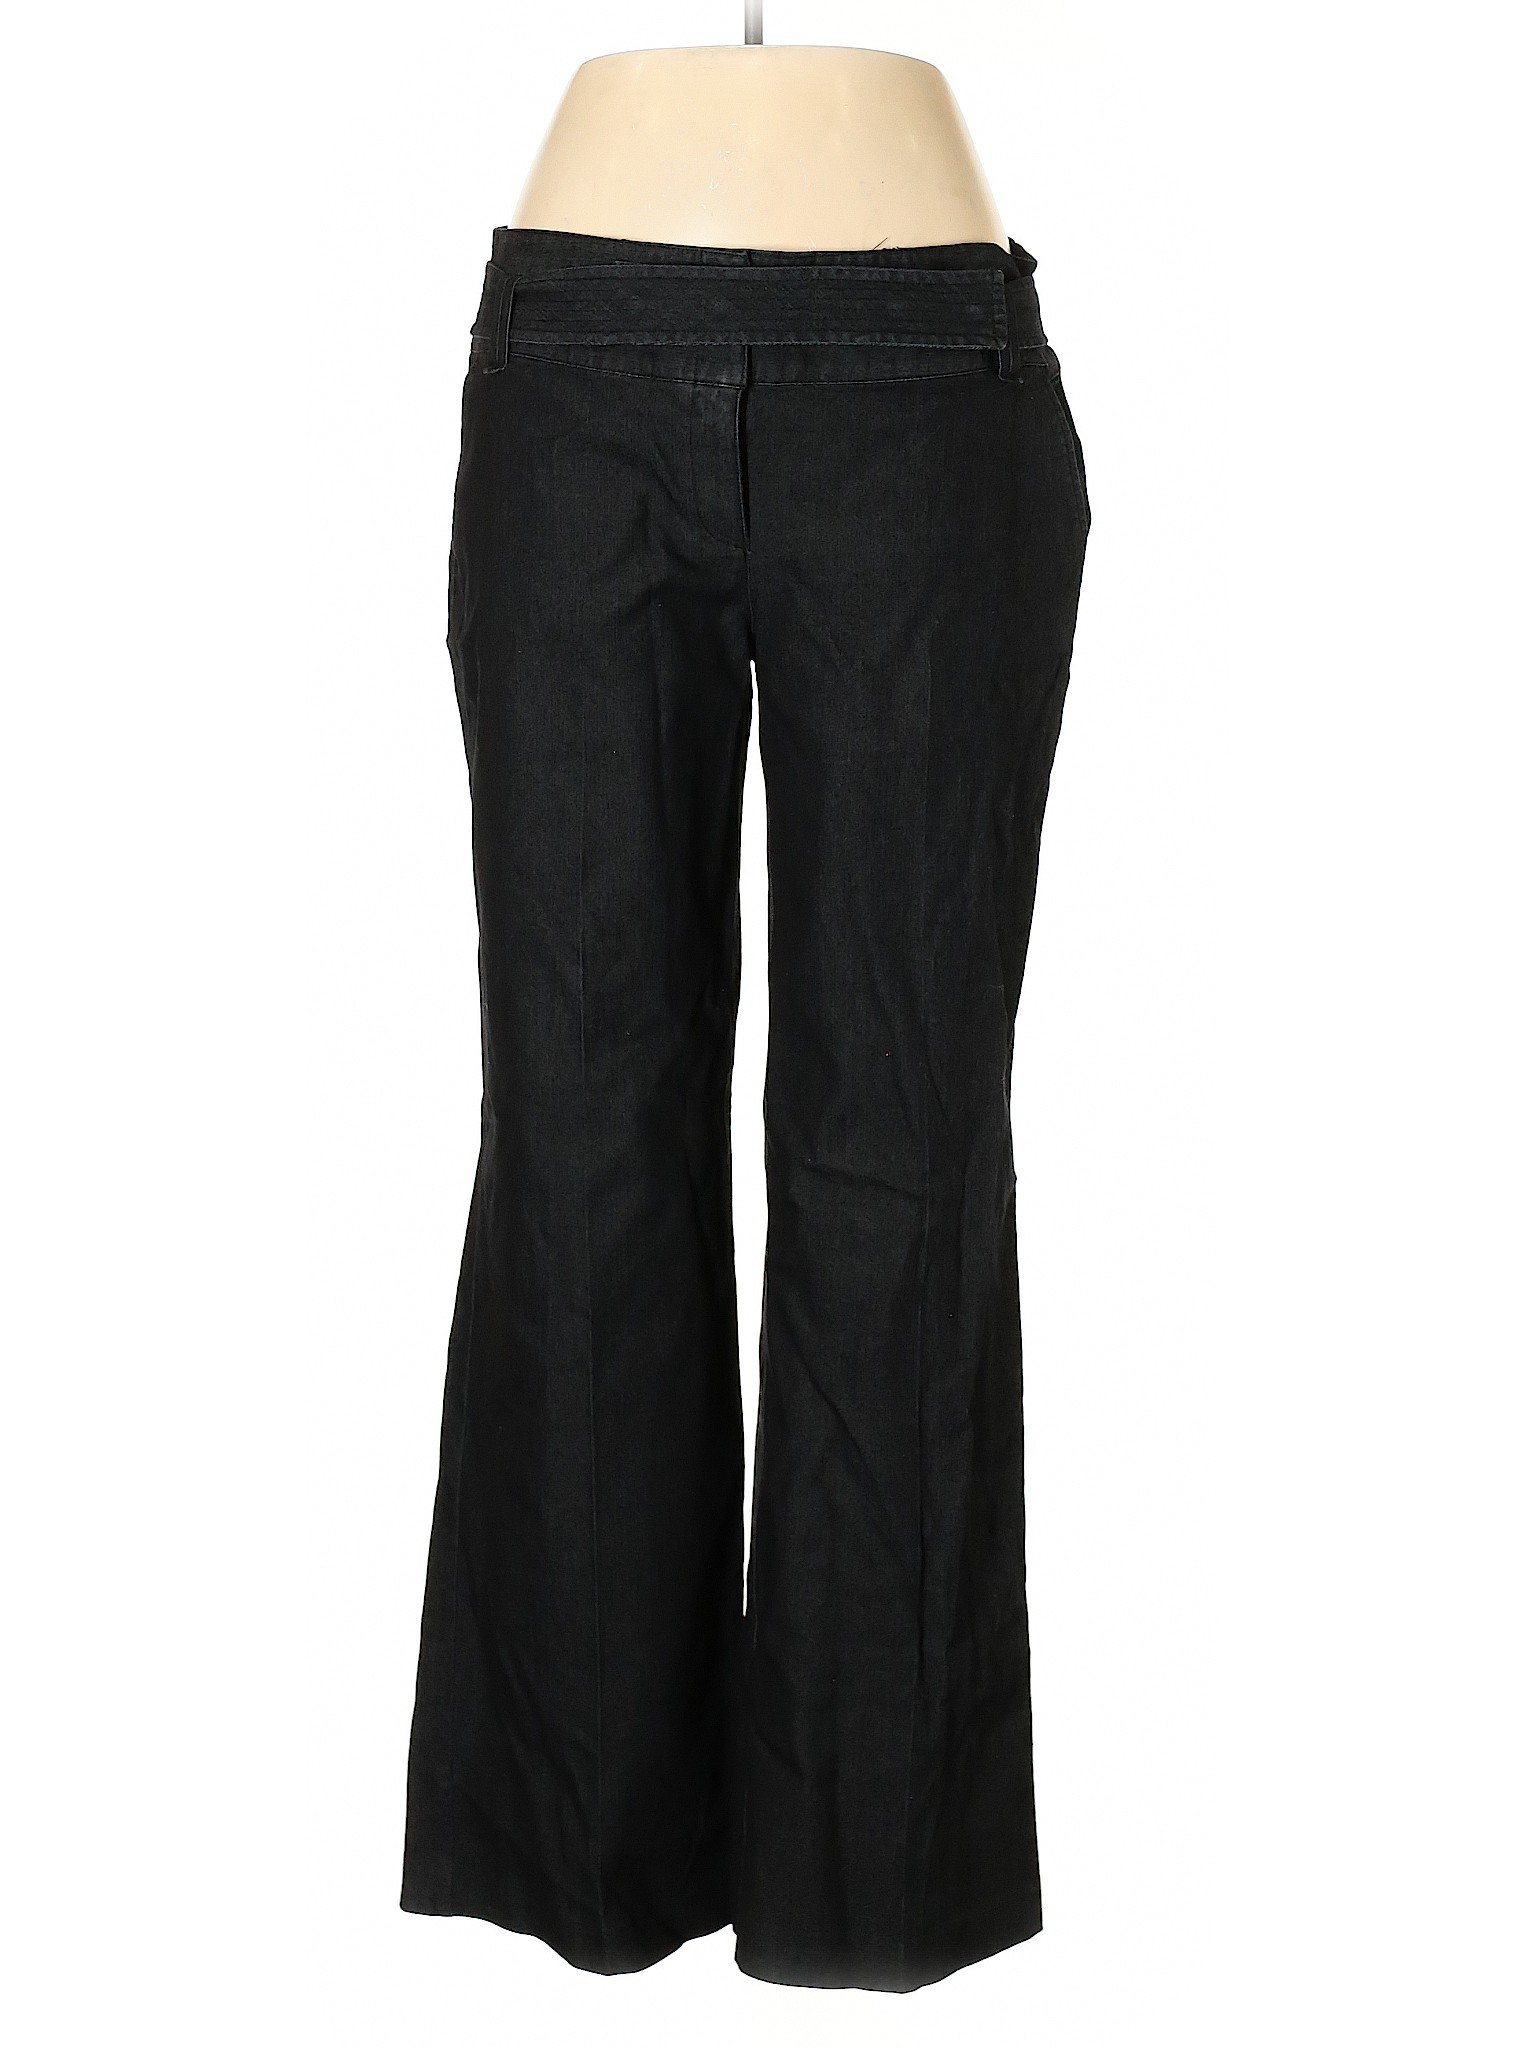 Attention Women Black Jeans 14 | eBay